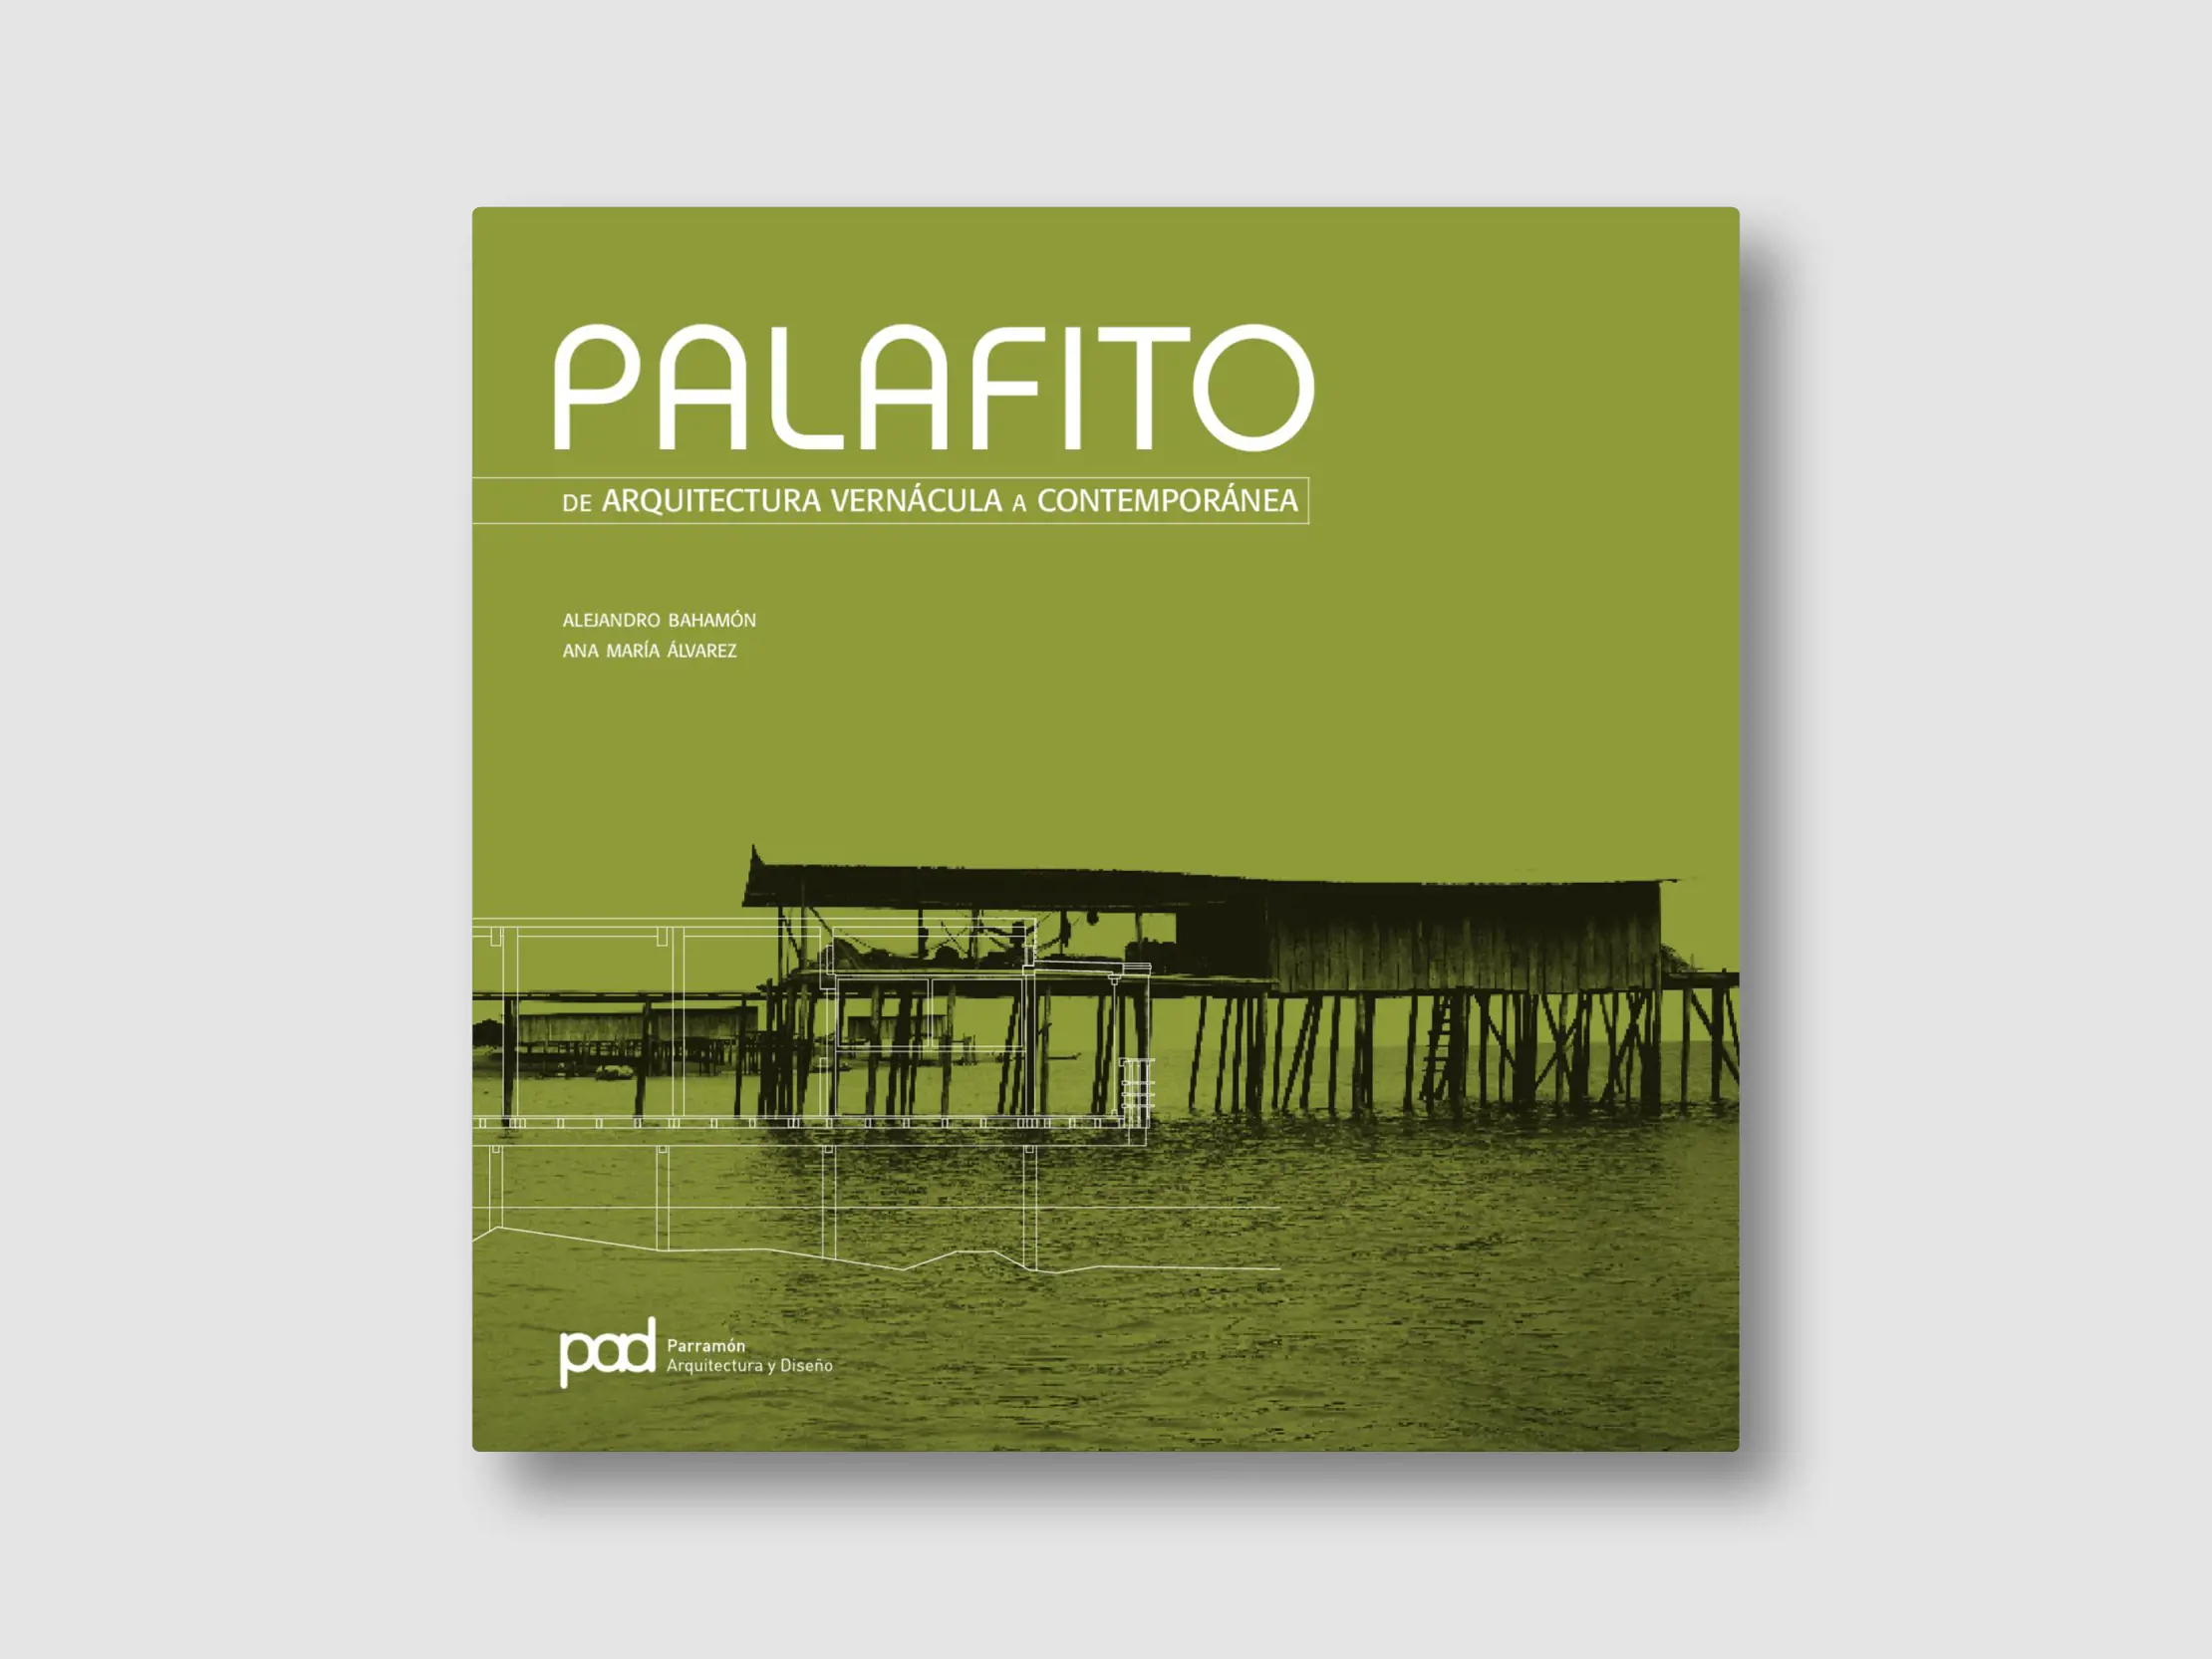 Palafito Titelblatt